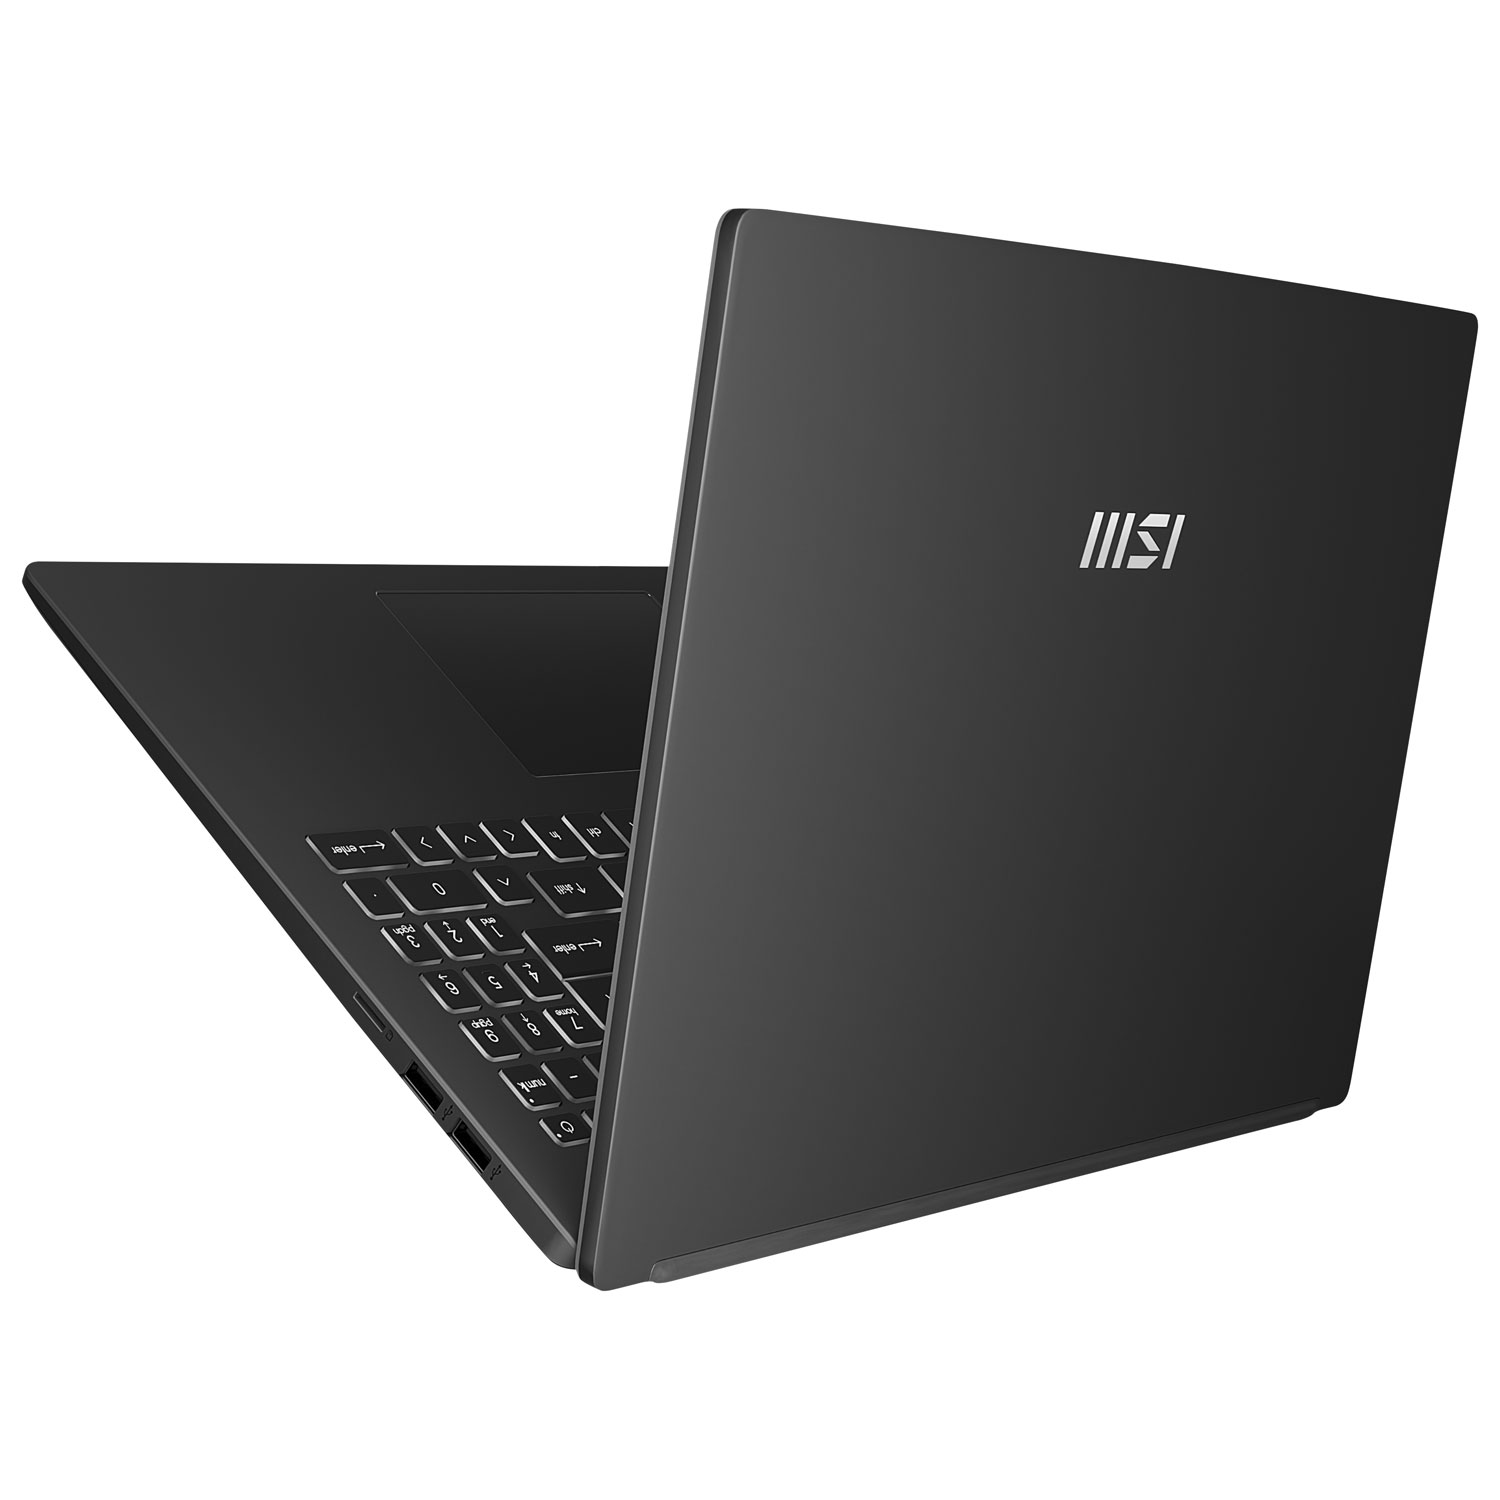 PC portable MSI noir 15,6 pouces - Cadeau entreprise pas cher